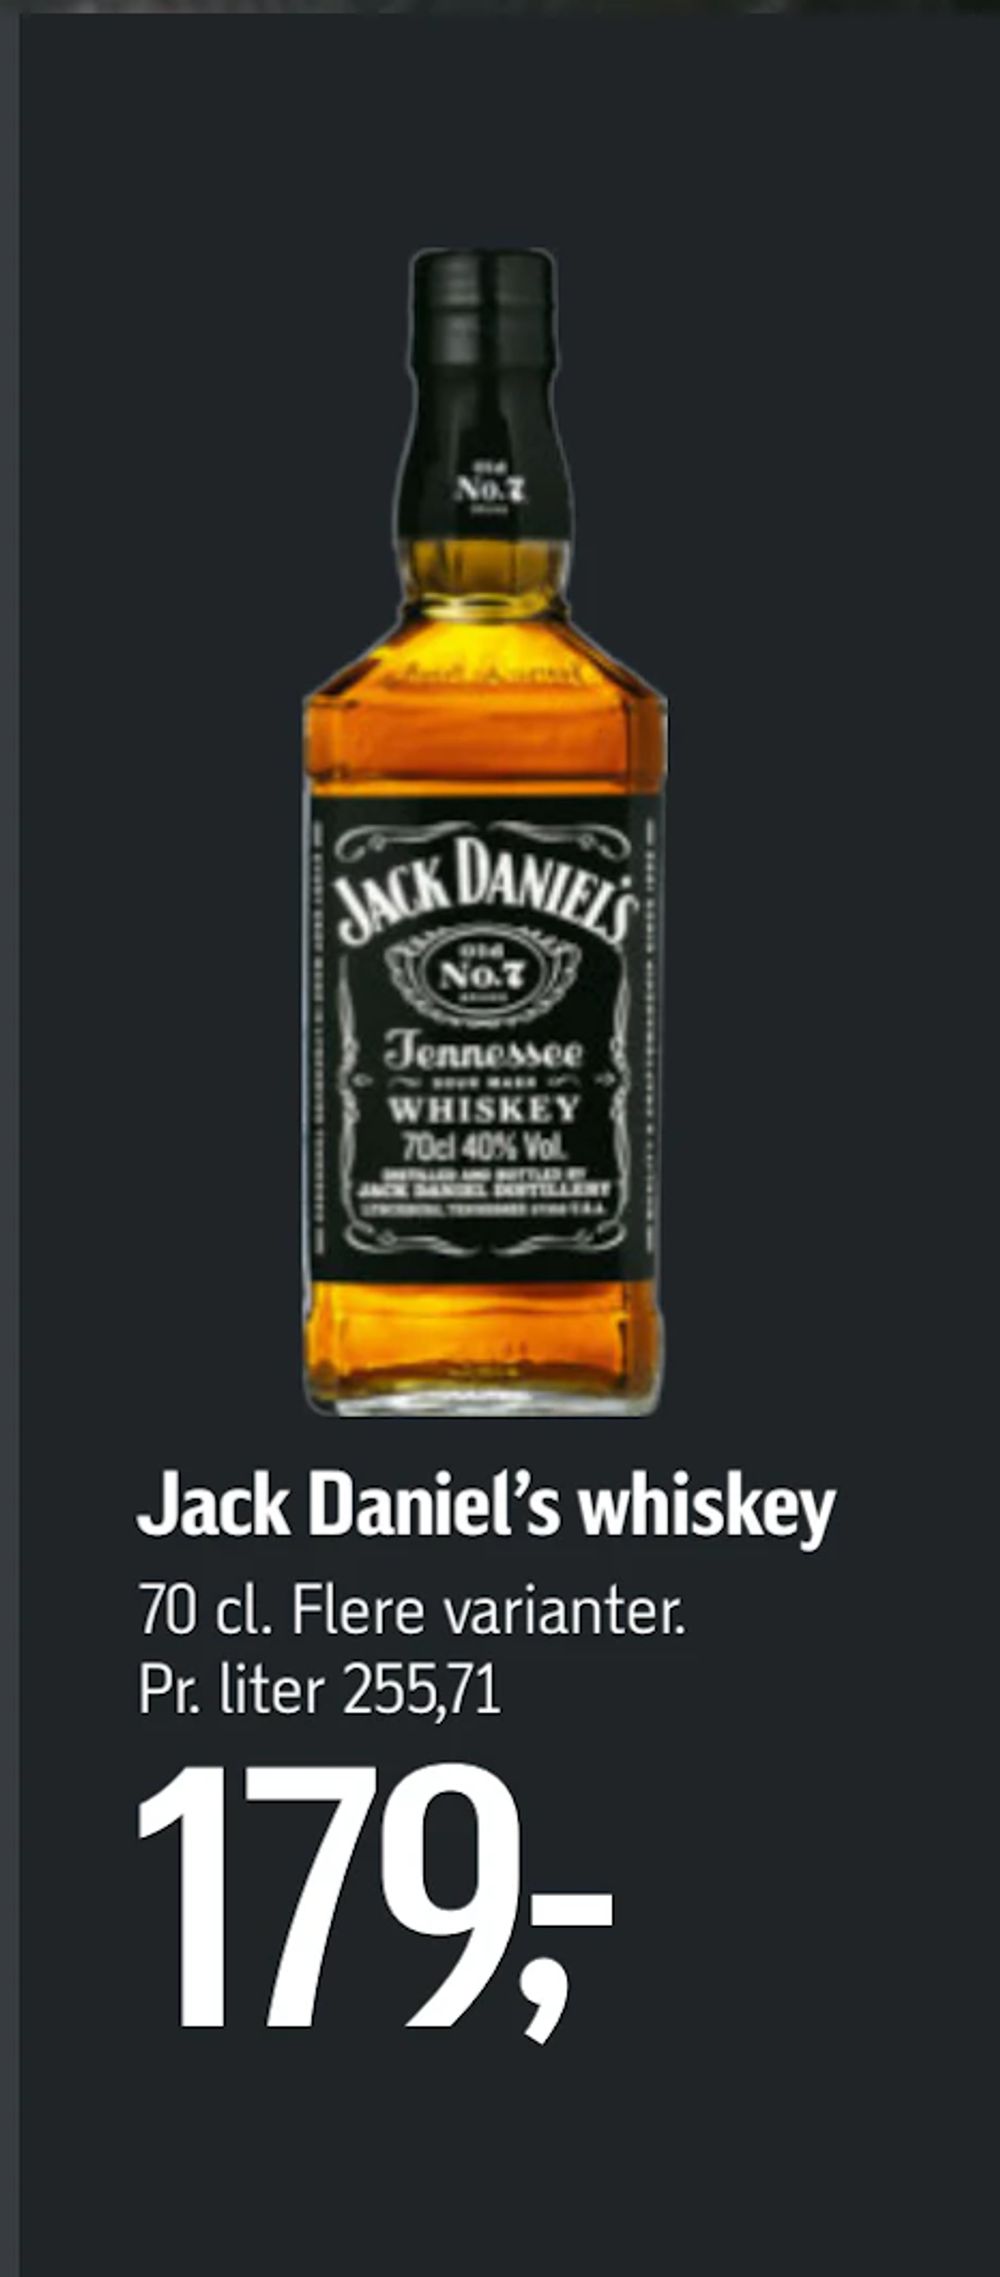 Tilbud på Jack Daniel’s whiskey fra føtex til 179 kr.